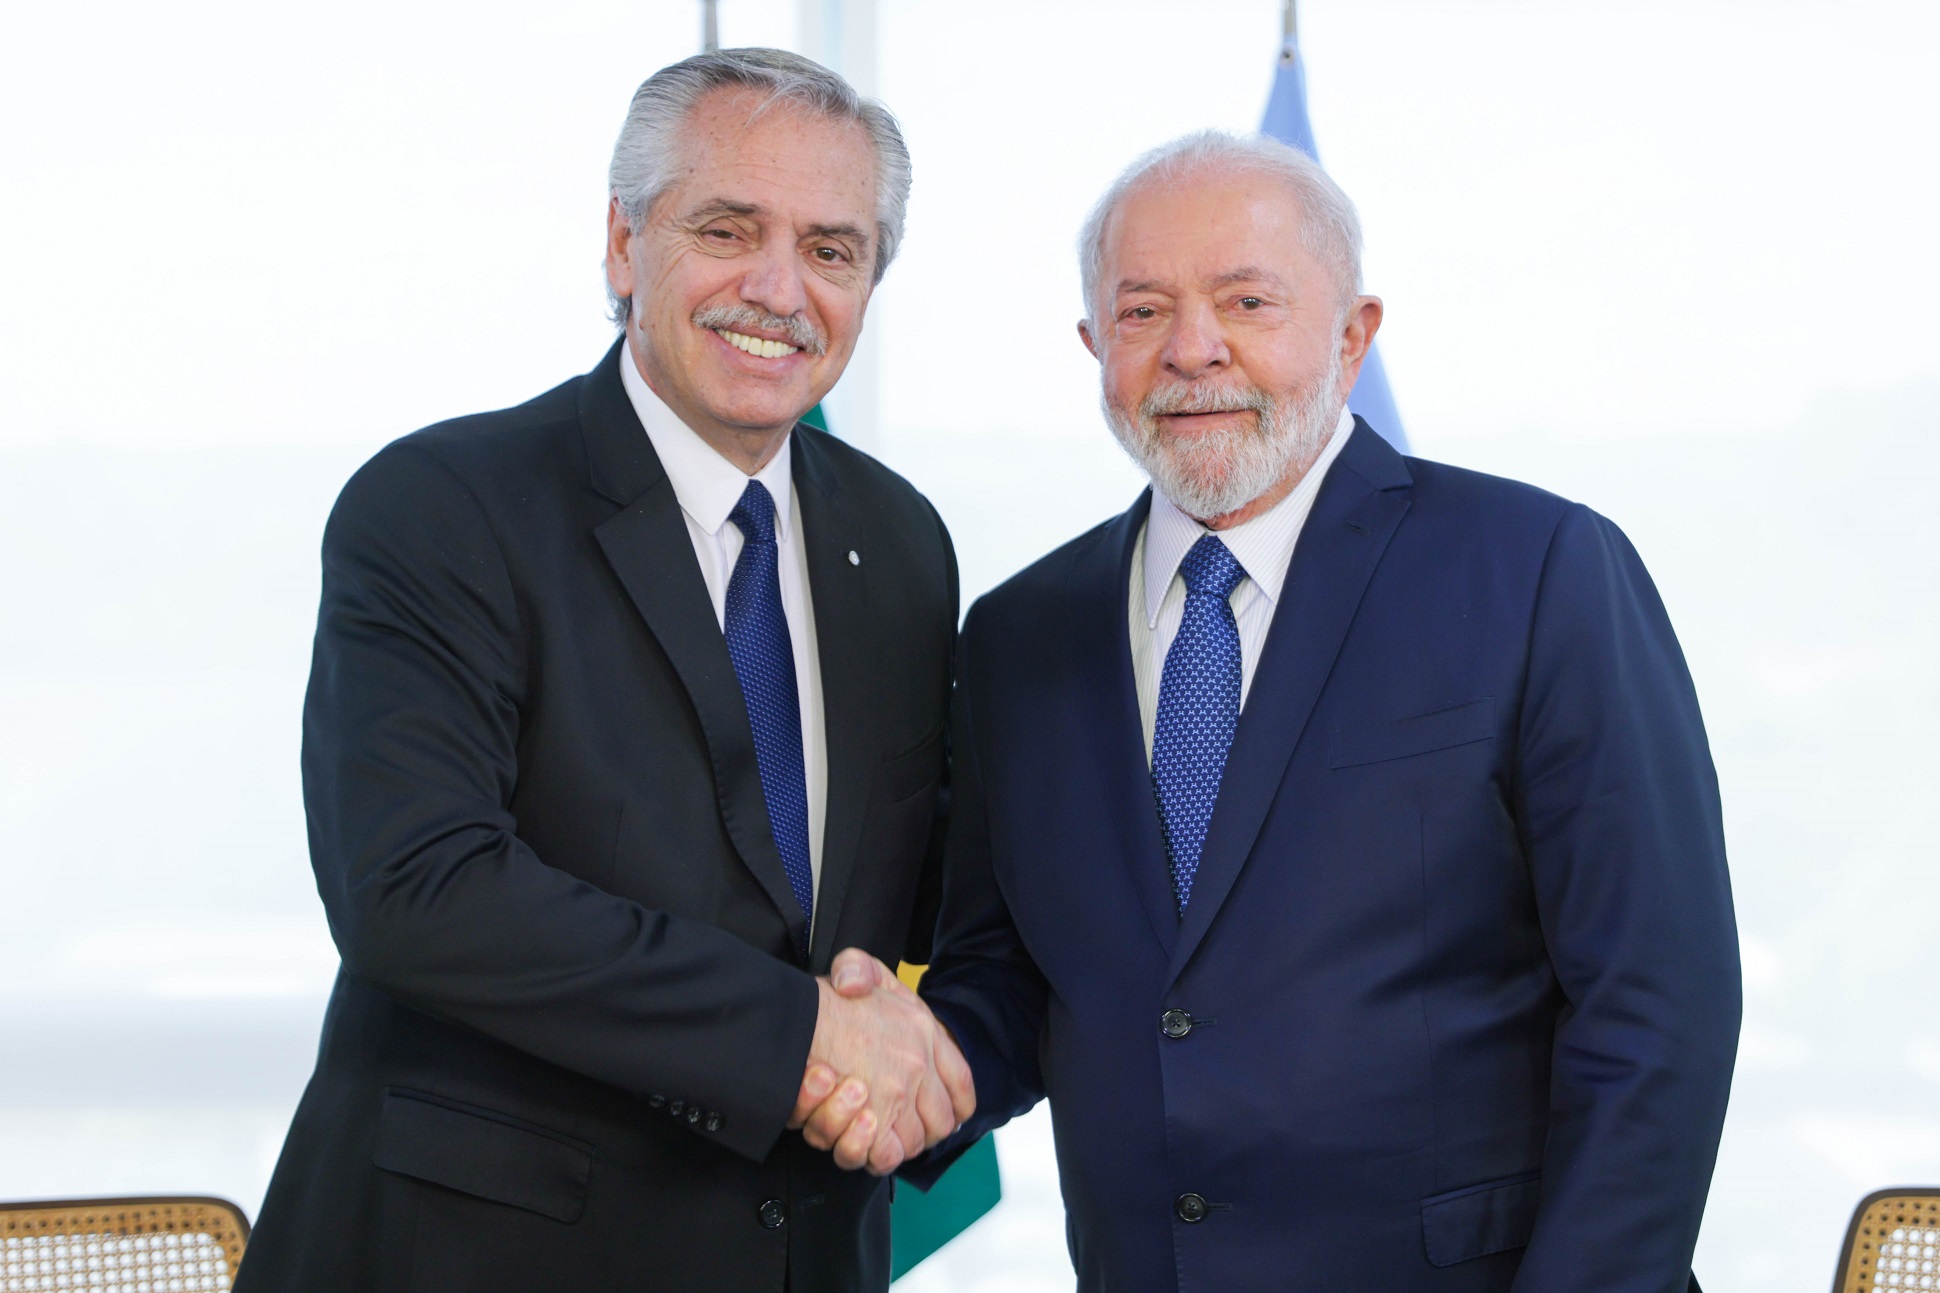 El Presidente llegó al Palacio de Planalto para reunirse con Luiz Inácio Lula da Silva